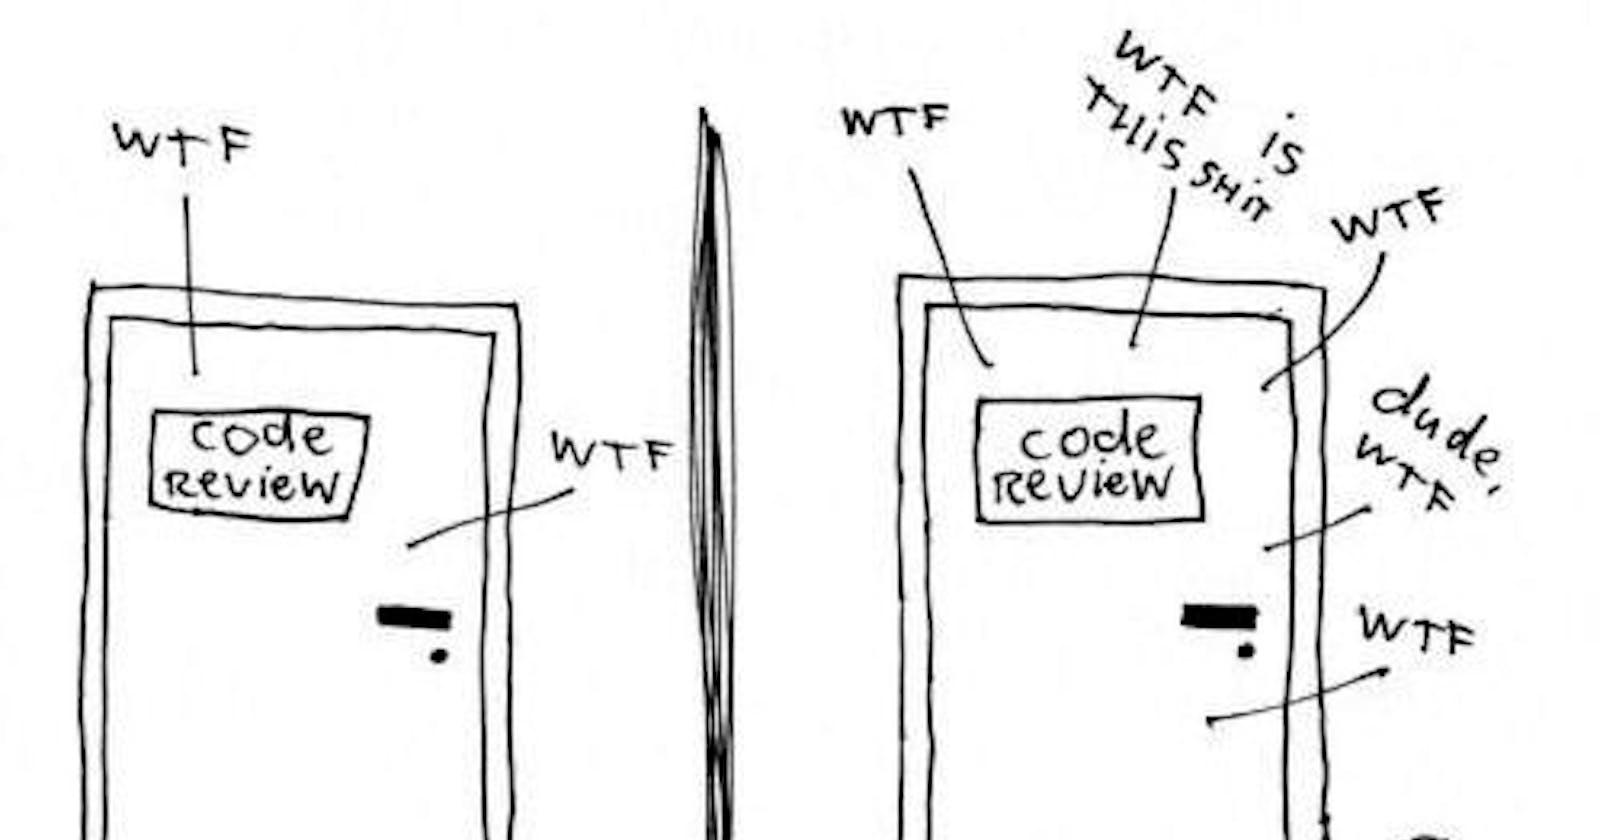 Review code - có quan trọng bằng review lương 🤣🤣🤣